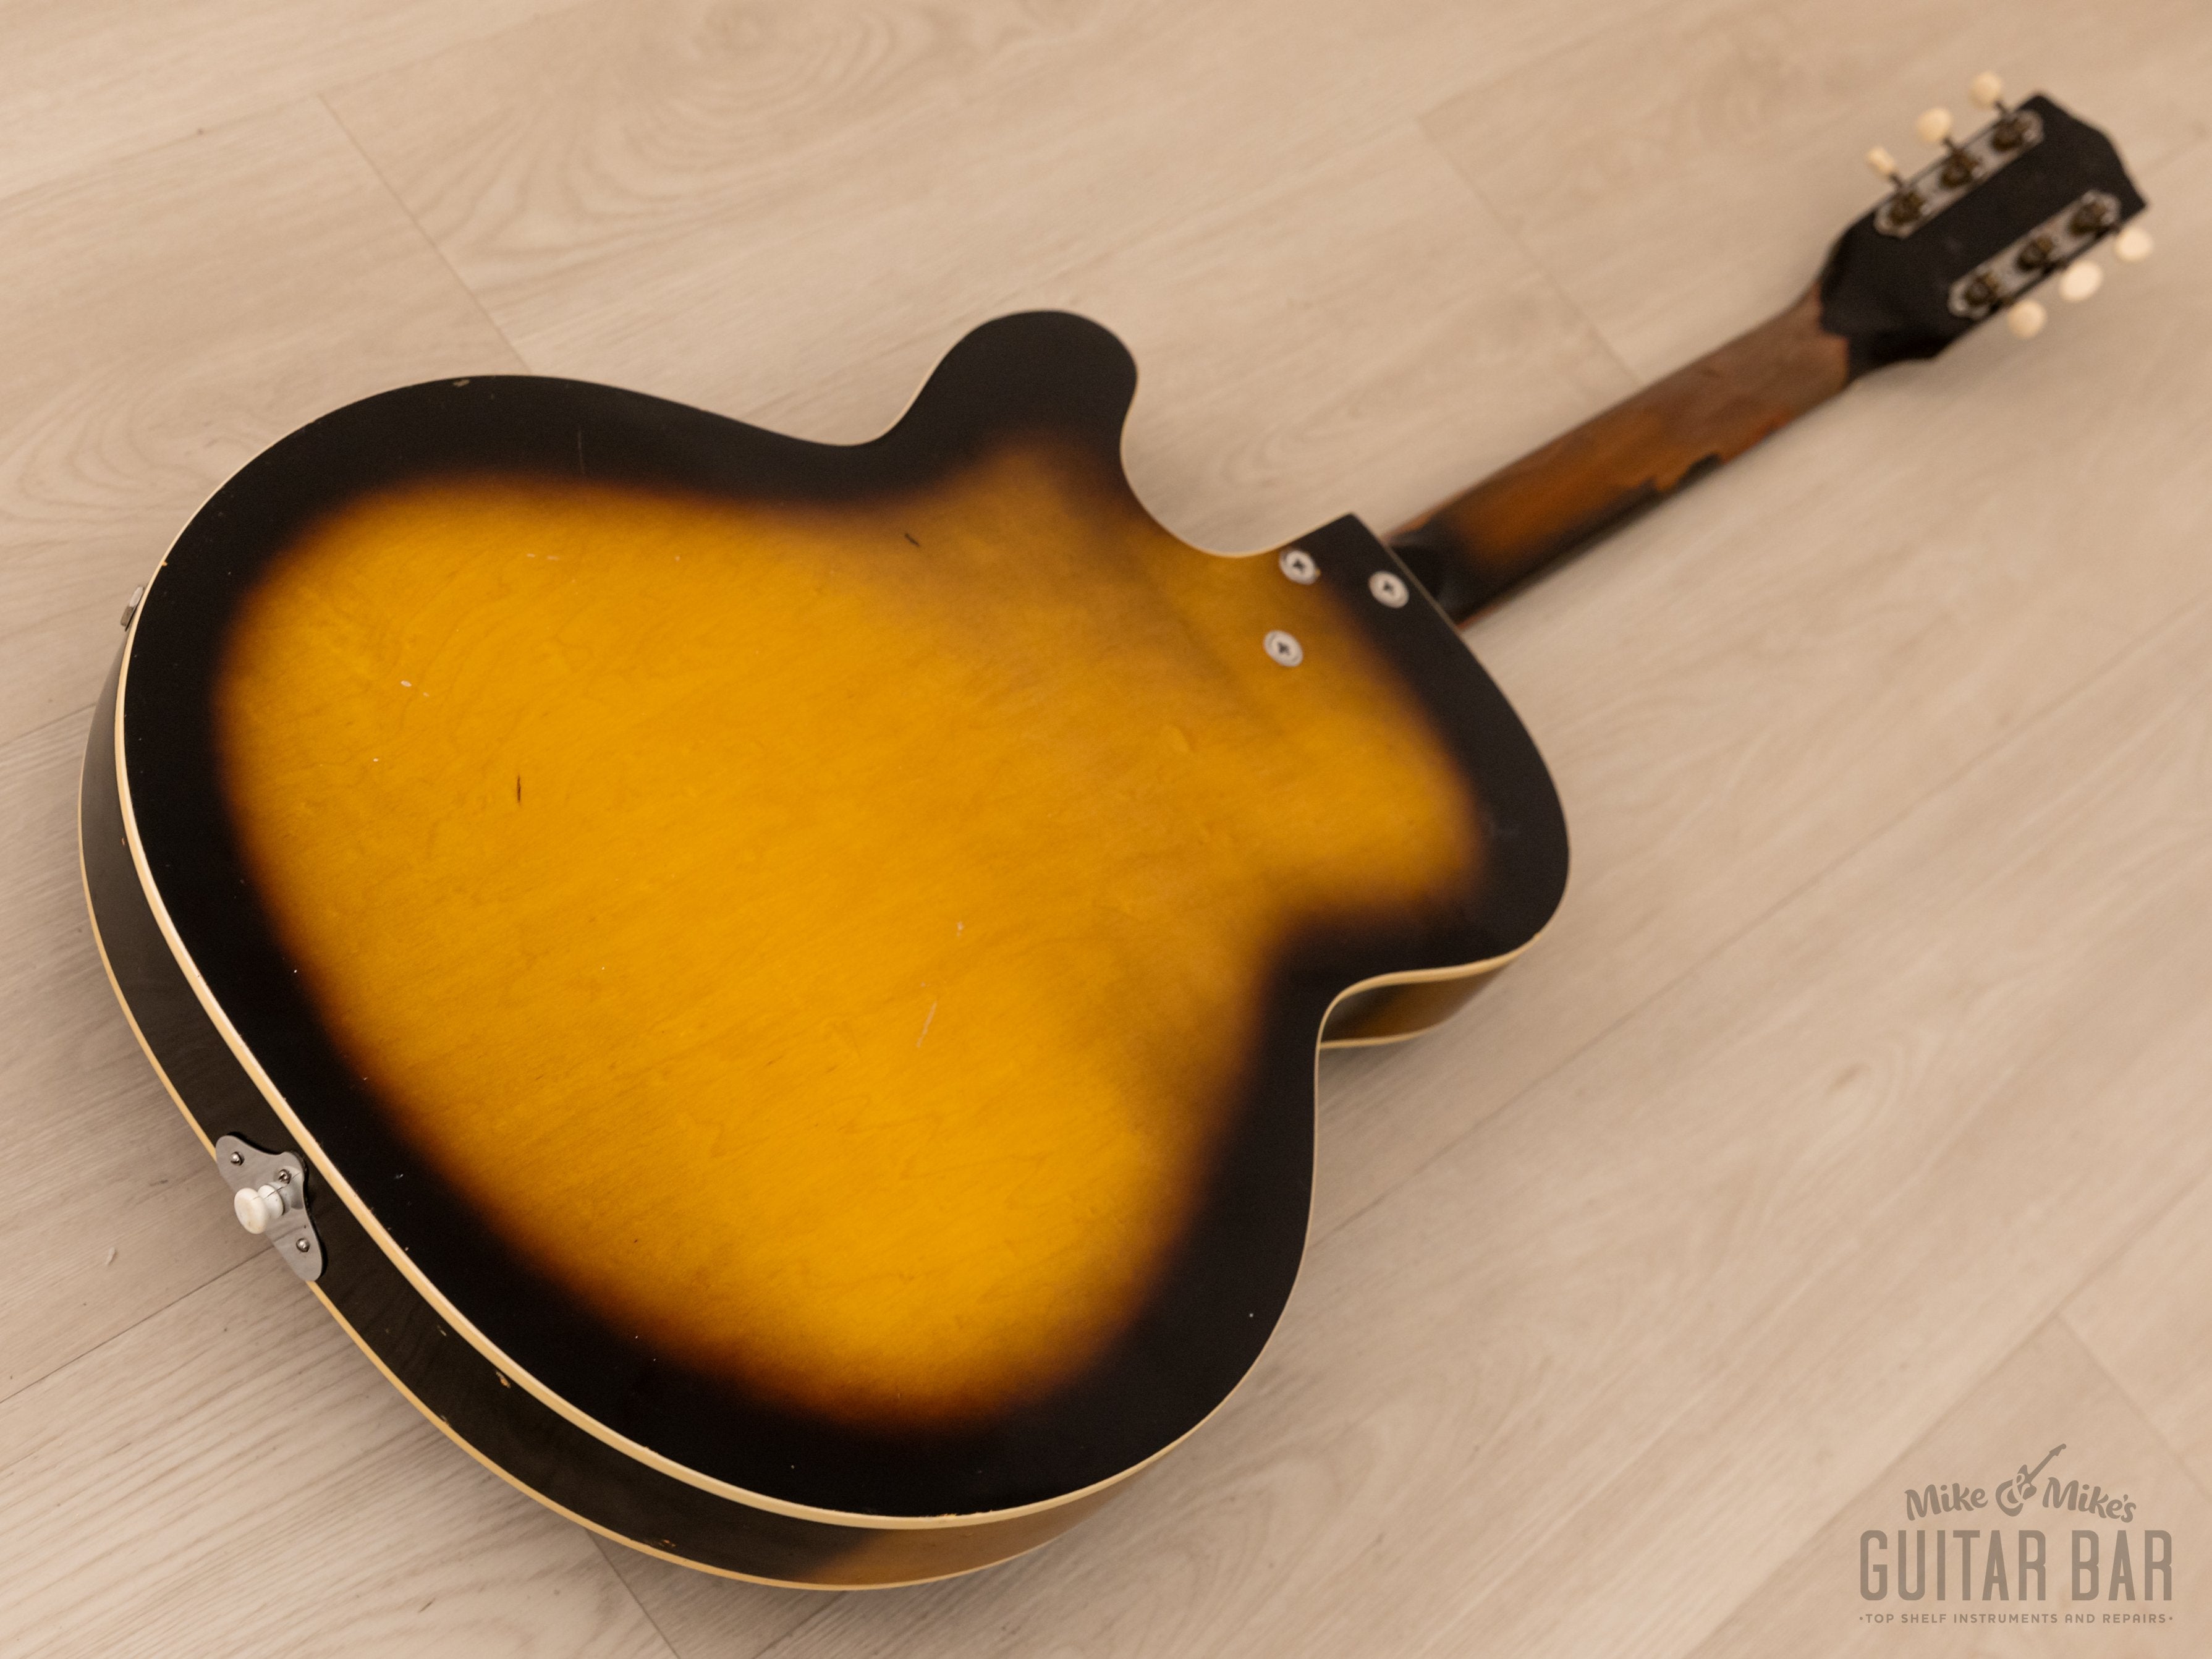 1963 Harmony H59 Rocket Vintage Guitar 100% Original w/ DeArmond Gold Foils, Case